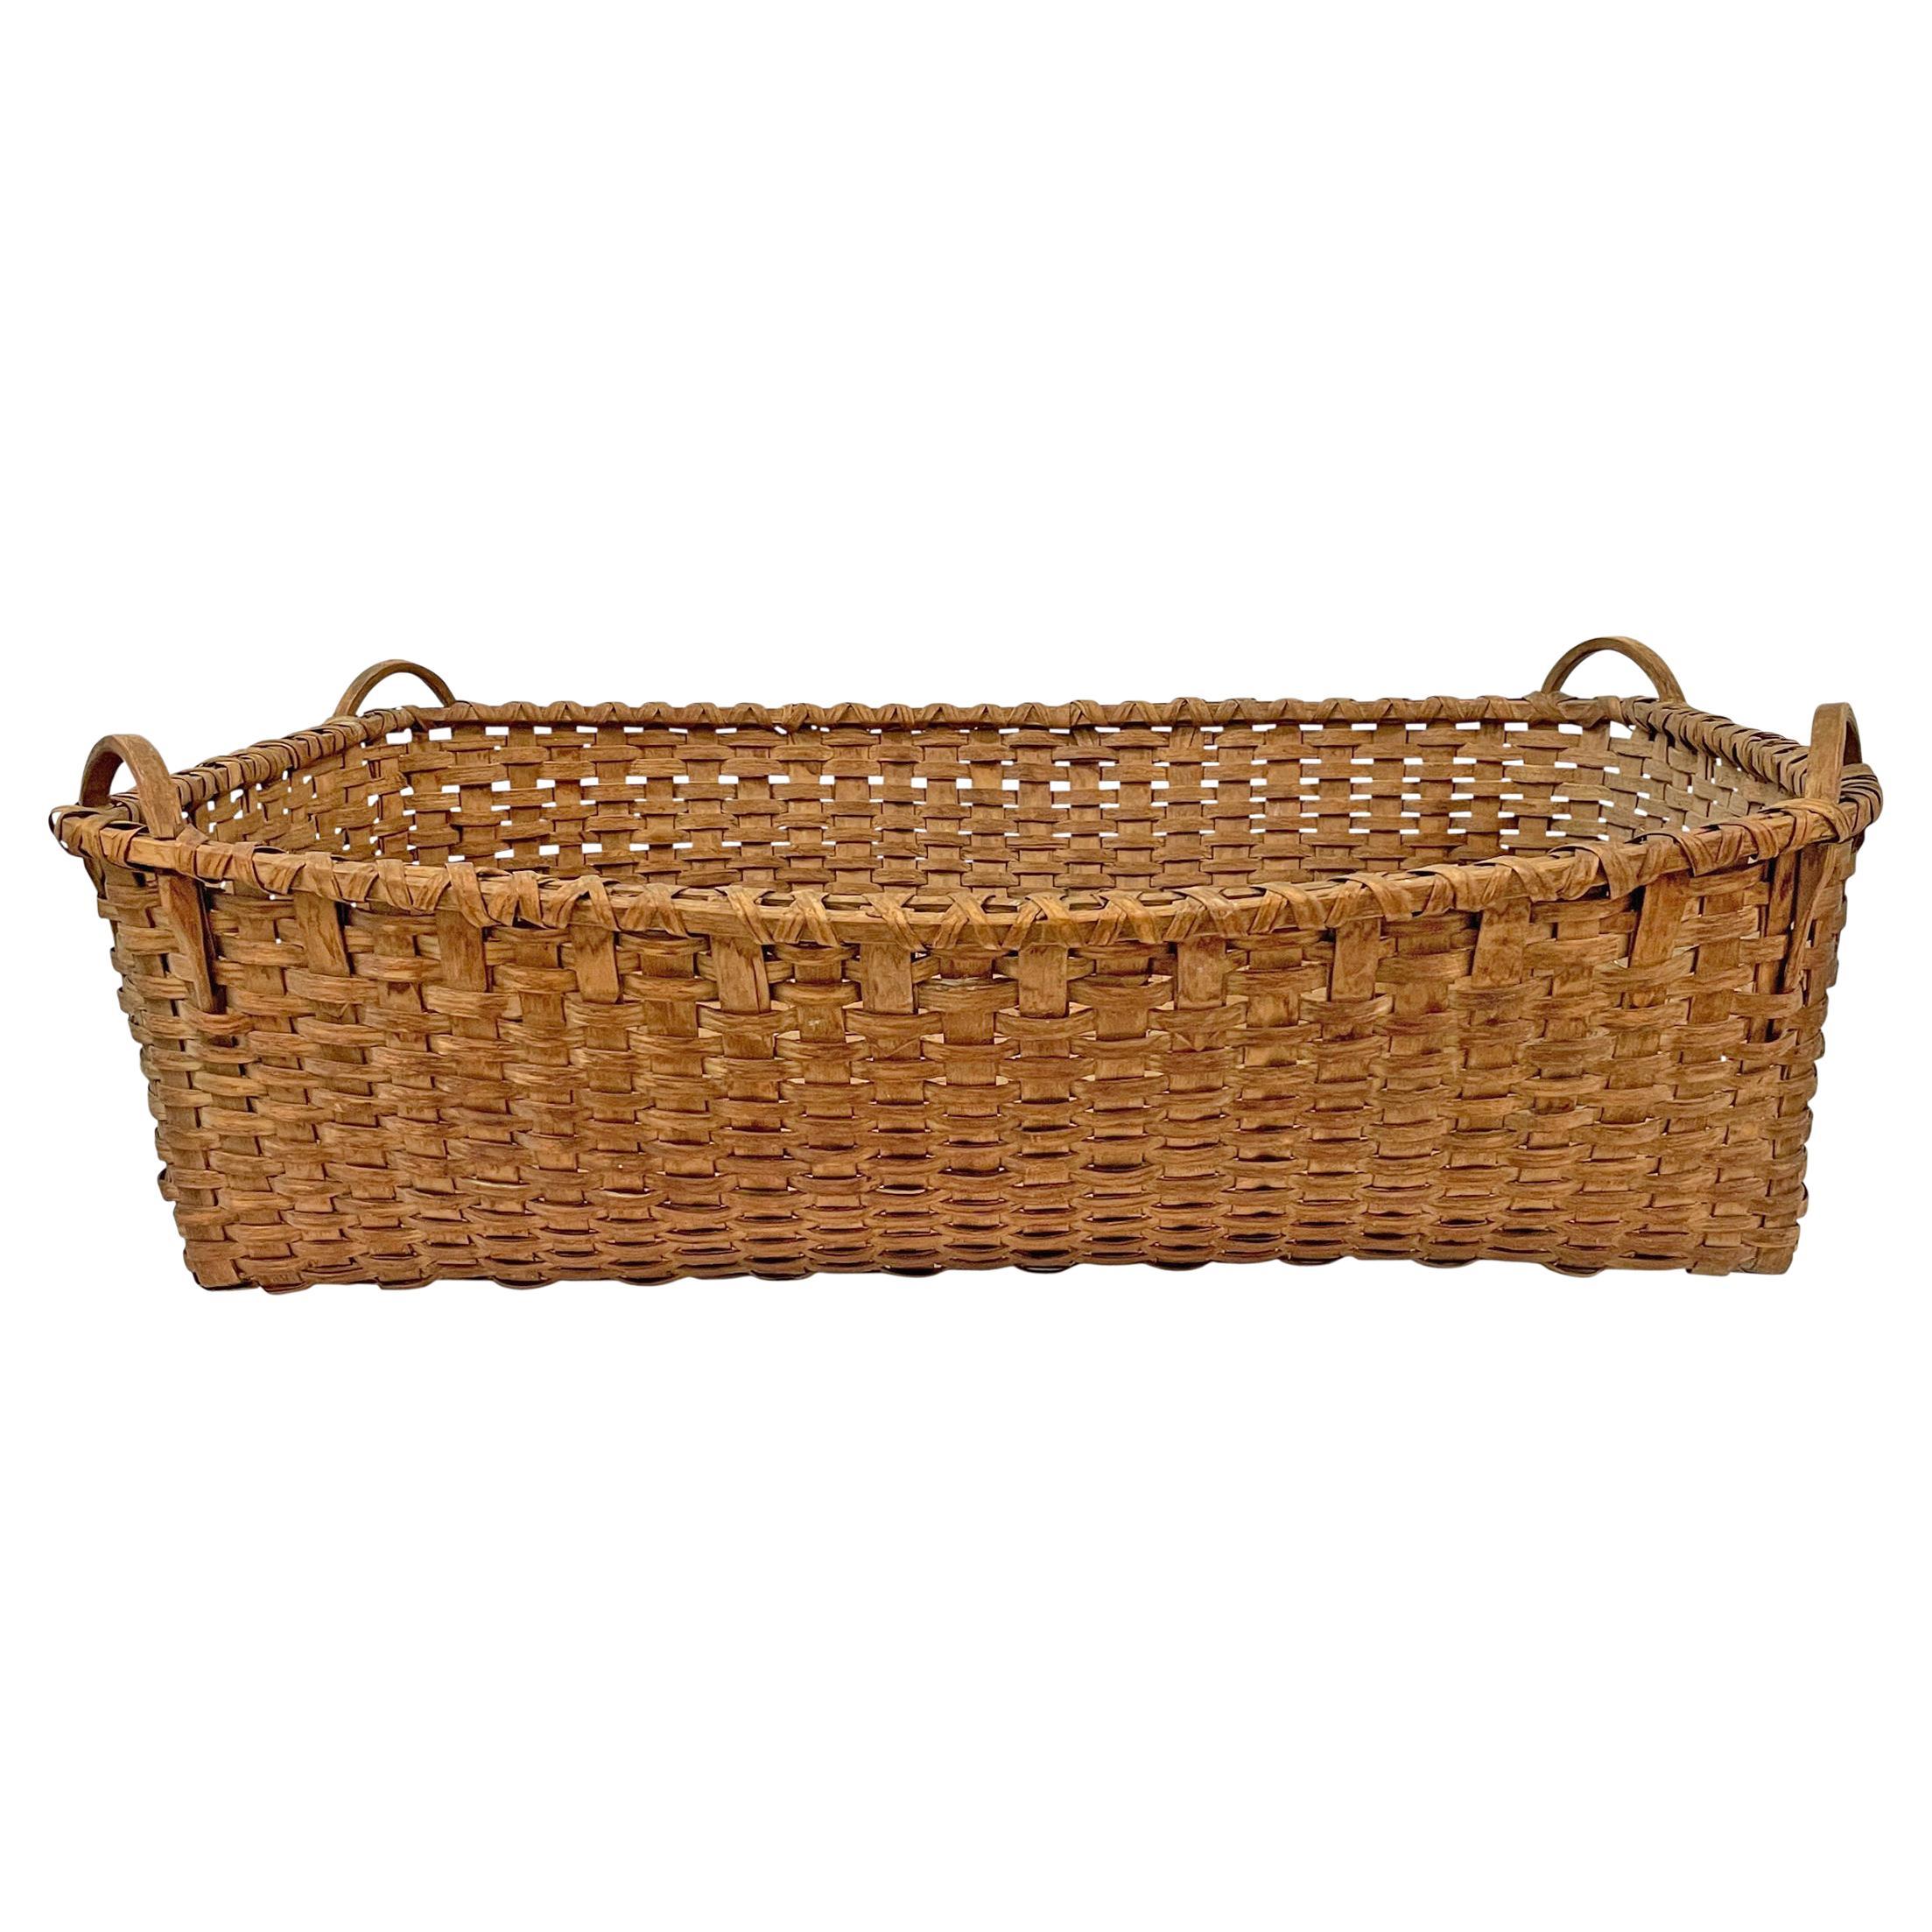 19th Century American Tobacco Leaf Basket